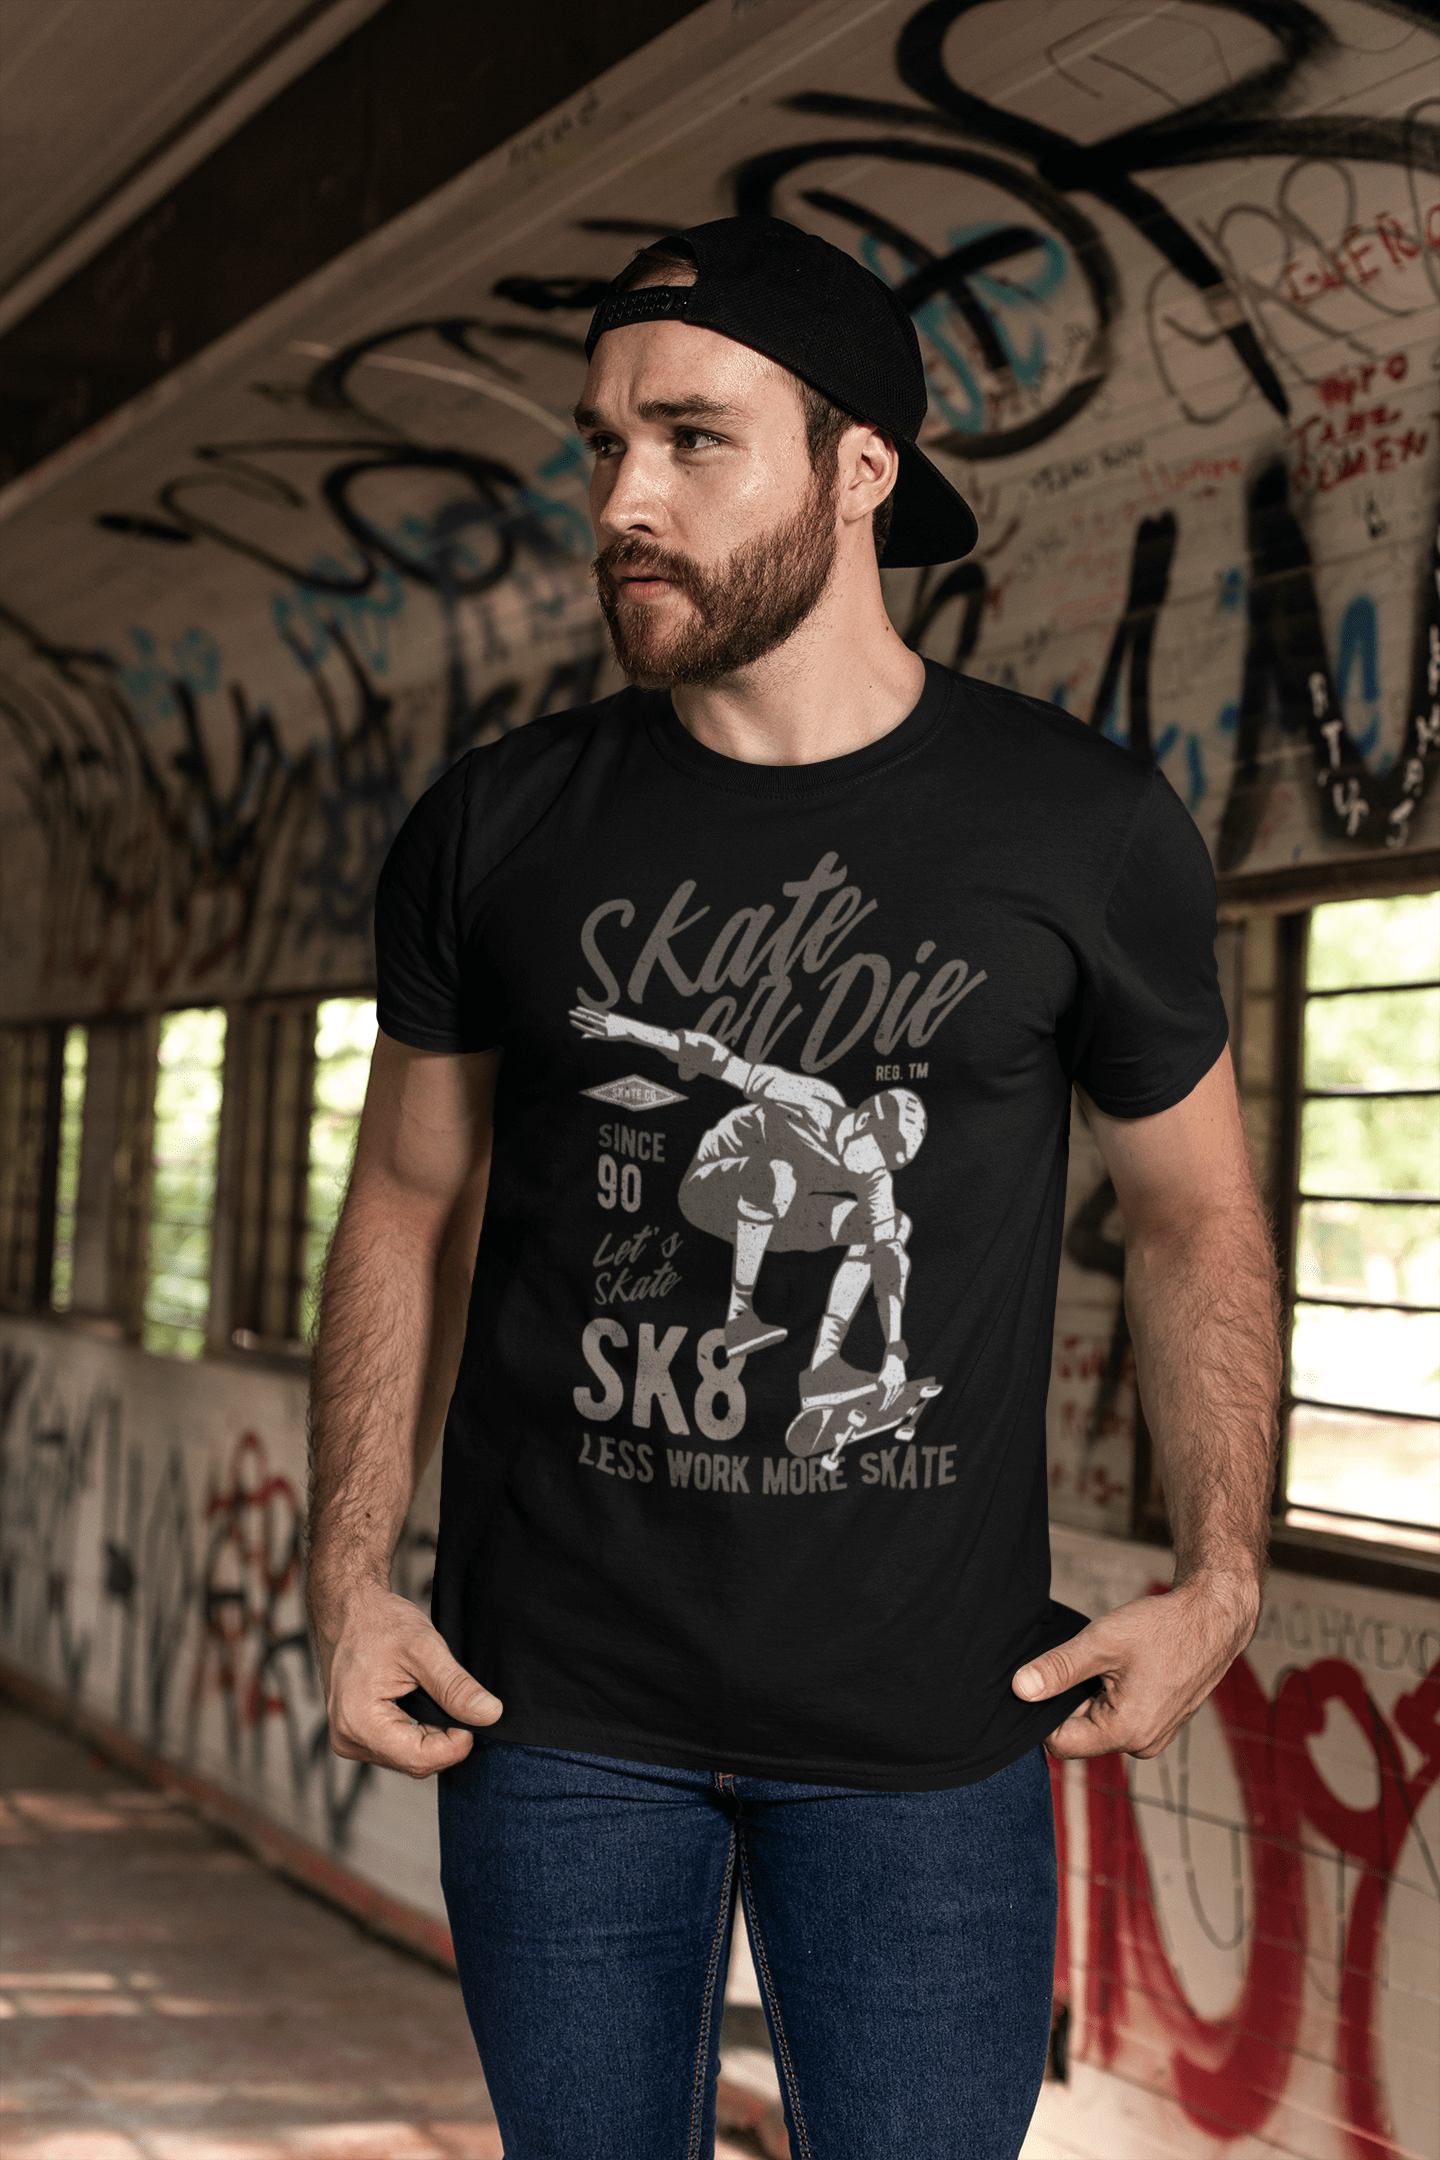 ULTRABASIC Herren T-Shirt Skate or Die Since 90s – Let's Skate SK8 T-Shirt